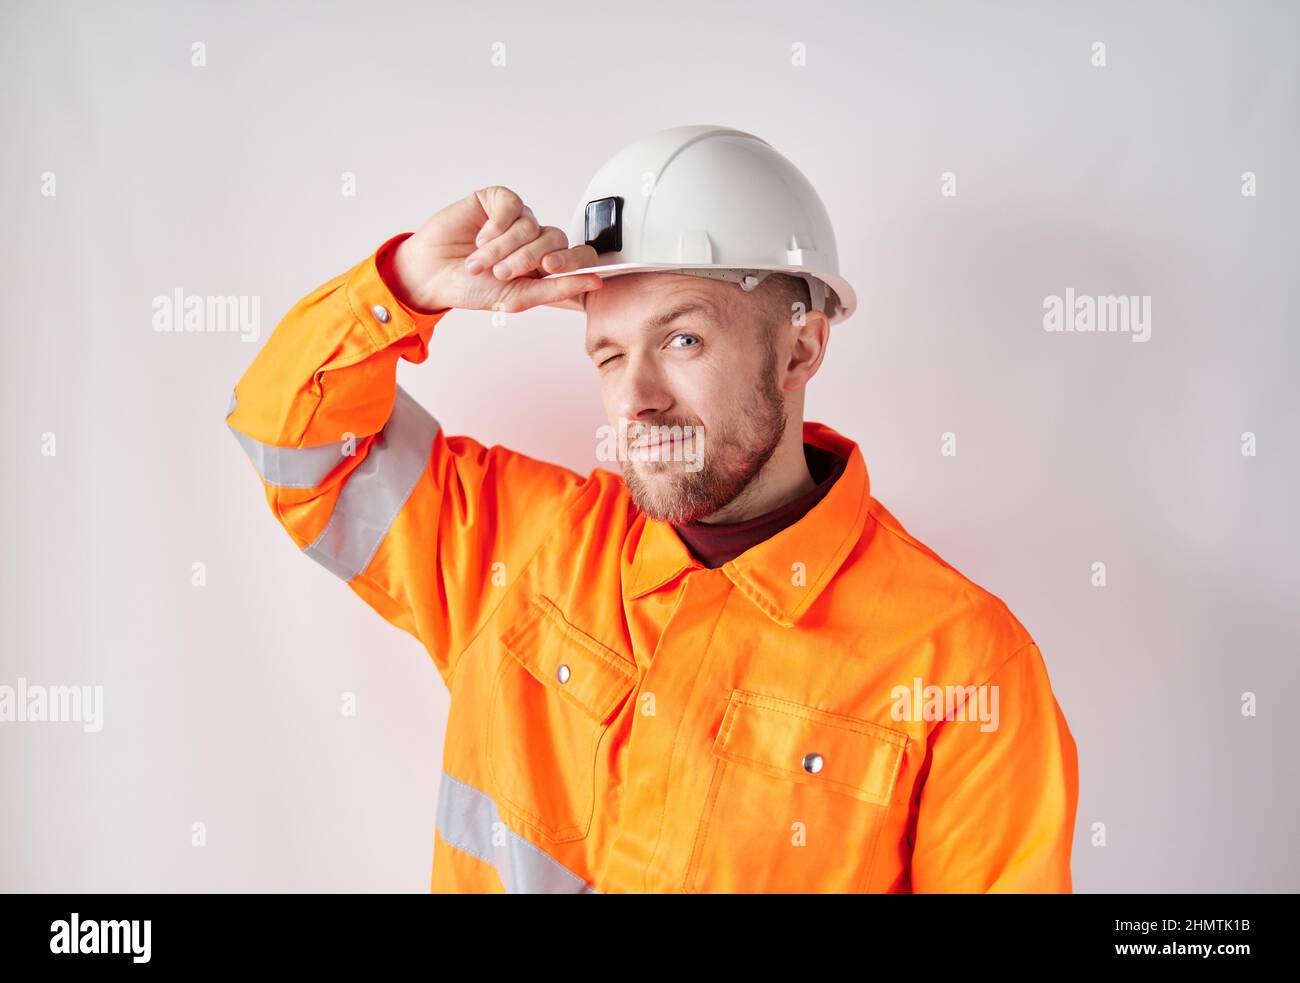 Fröhlich schauend auf Kamera junger kaukasischer Ingenieur, Arbeiter, Supervisor oder Bauunternehmer in weißem Helm und orangefarbener Jacke, der seinen Hardhut korrigierte. Konzept der Bauindustrie. Hochwertige Bilder Stockfoto